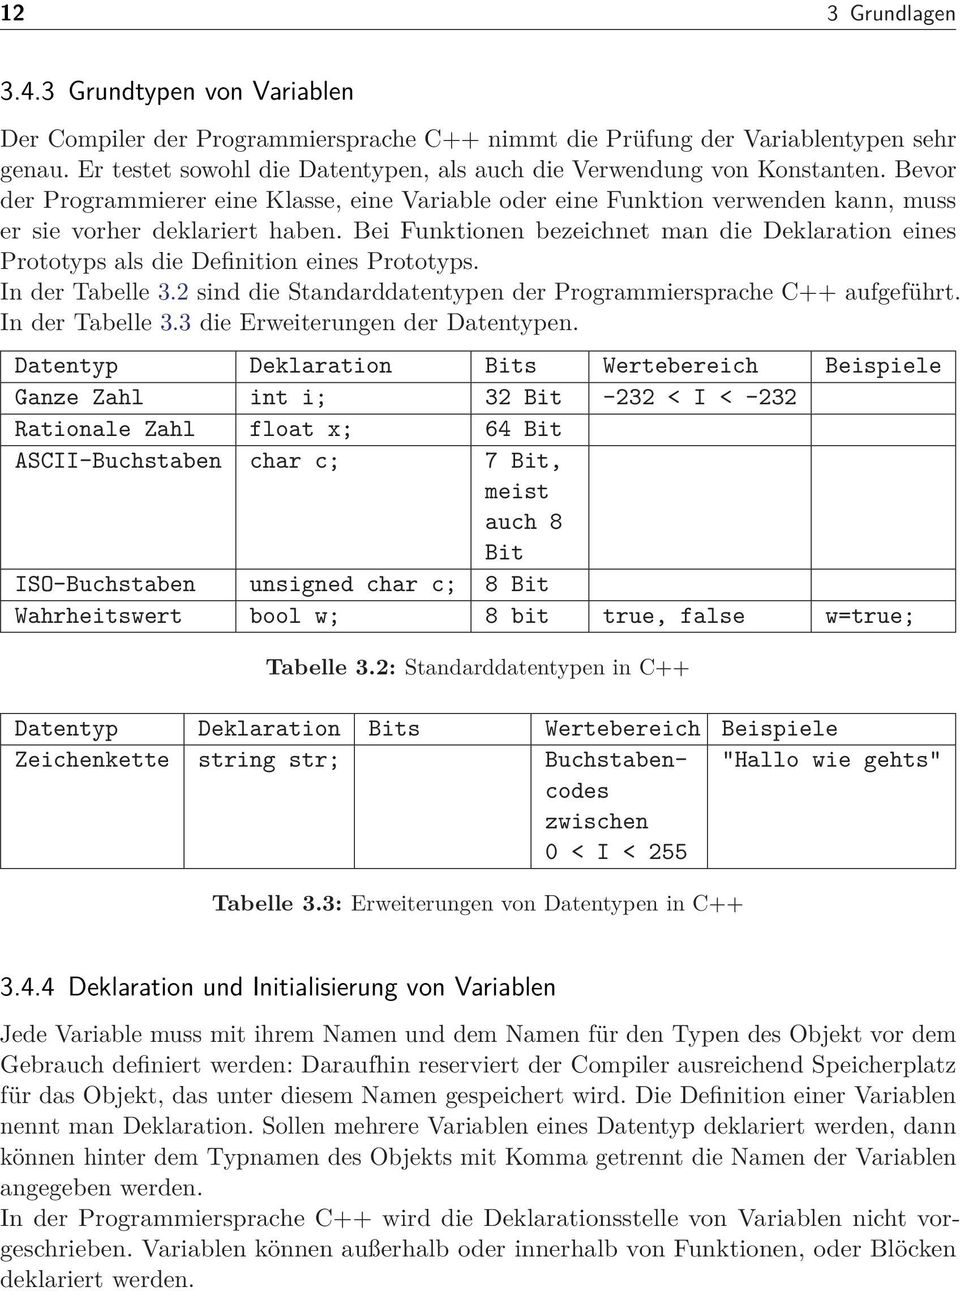 Bei Funktionen bezeichnet man die Deklaration eines Prototyps als die Definition eines Prototyps. In der Tabelle 3.2 sind die Standarddatentypen der Programmiersprache C++ aufgeführt.